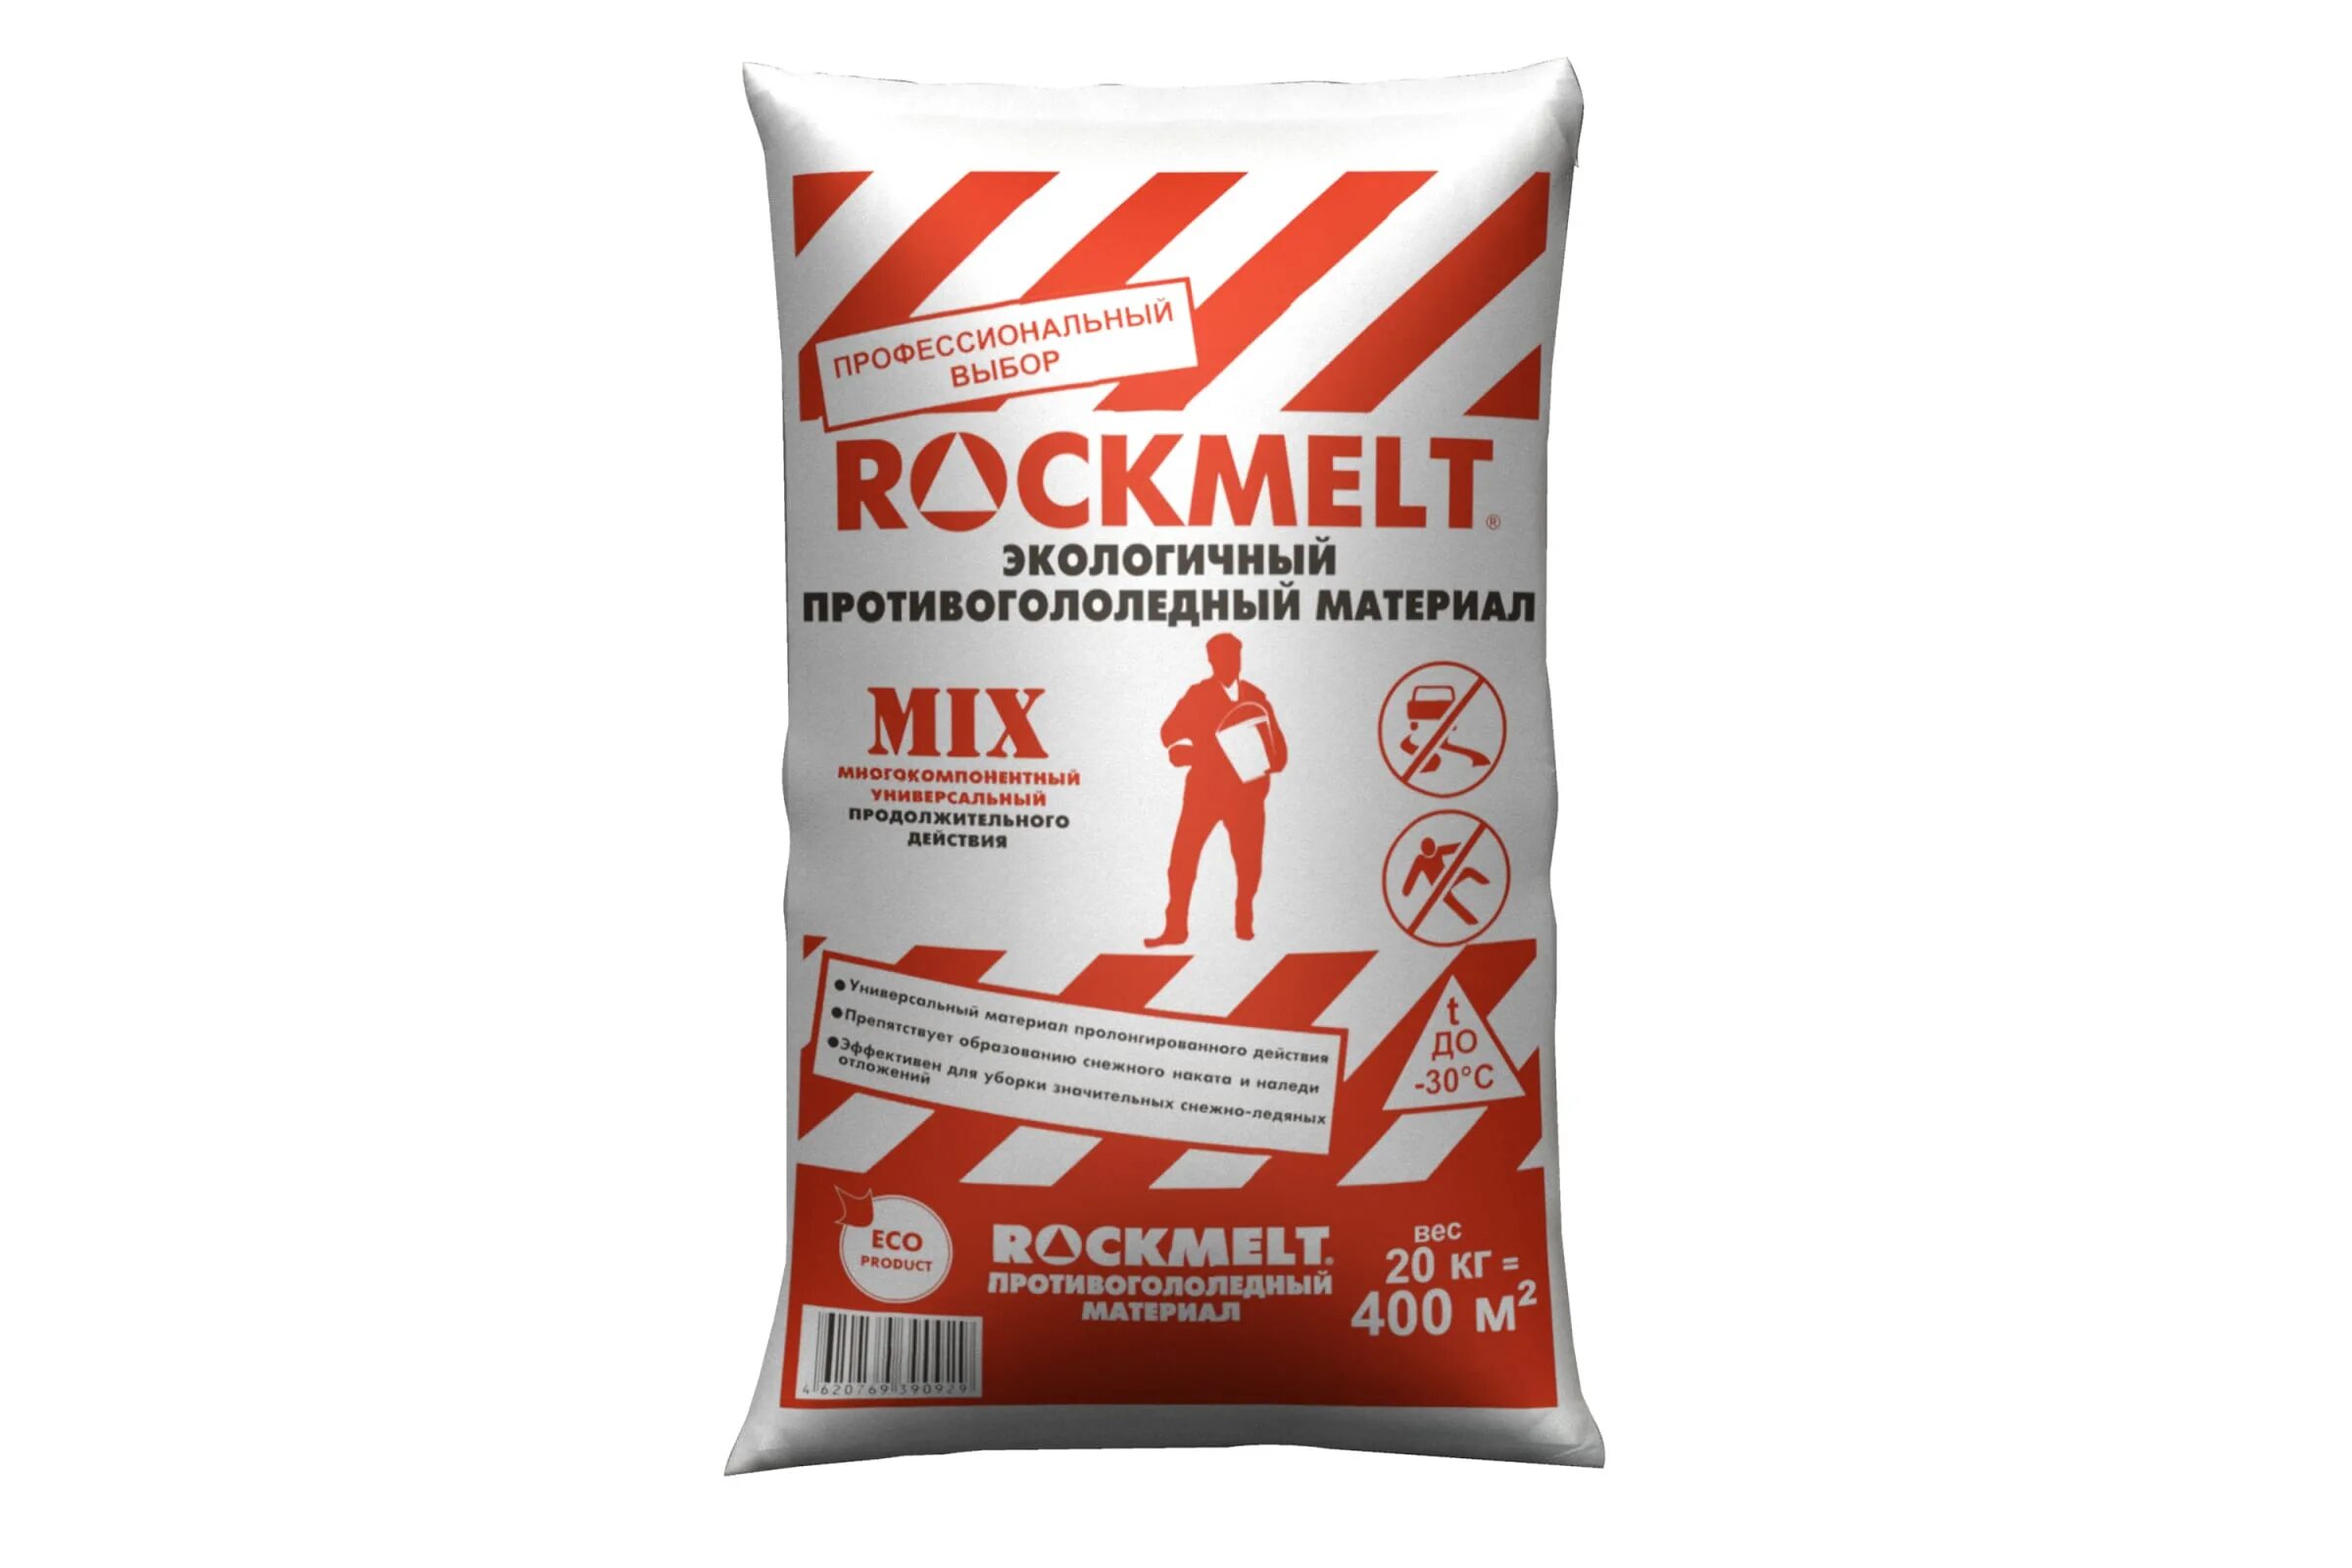 Реагент 20 кг. Реагент противогололедный ROCKMELT Mix. Реагент Рокмелт микс (ROCKMELT Mix) 20 кг. Противогололедный реагент ROCKMELT Mix 20 кг мешок. Противогололедный реагент расход на м2.